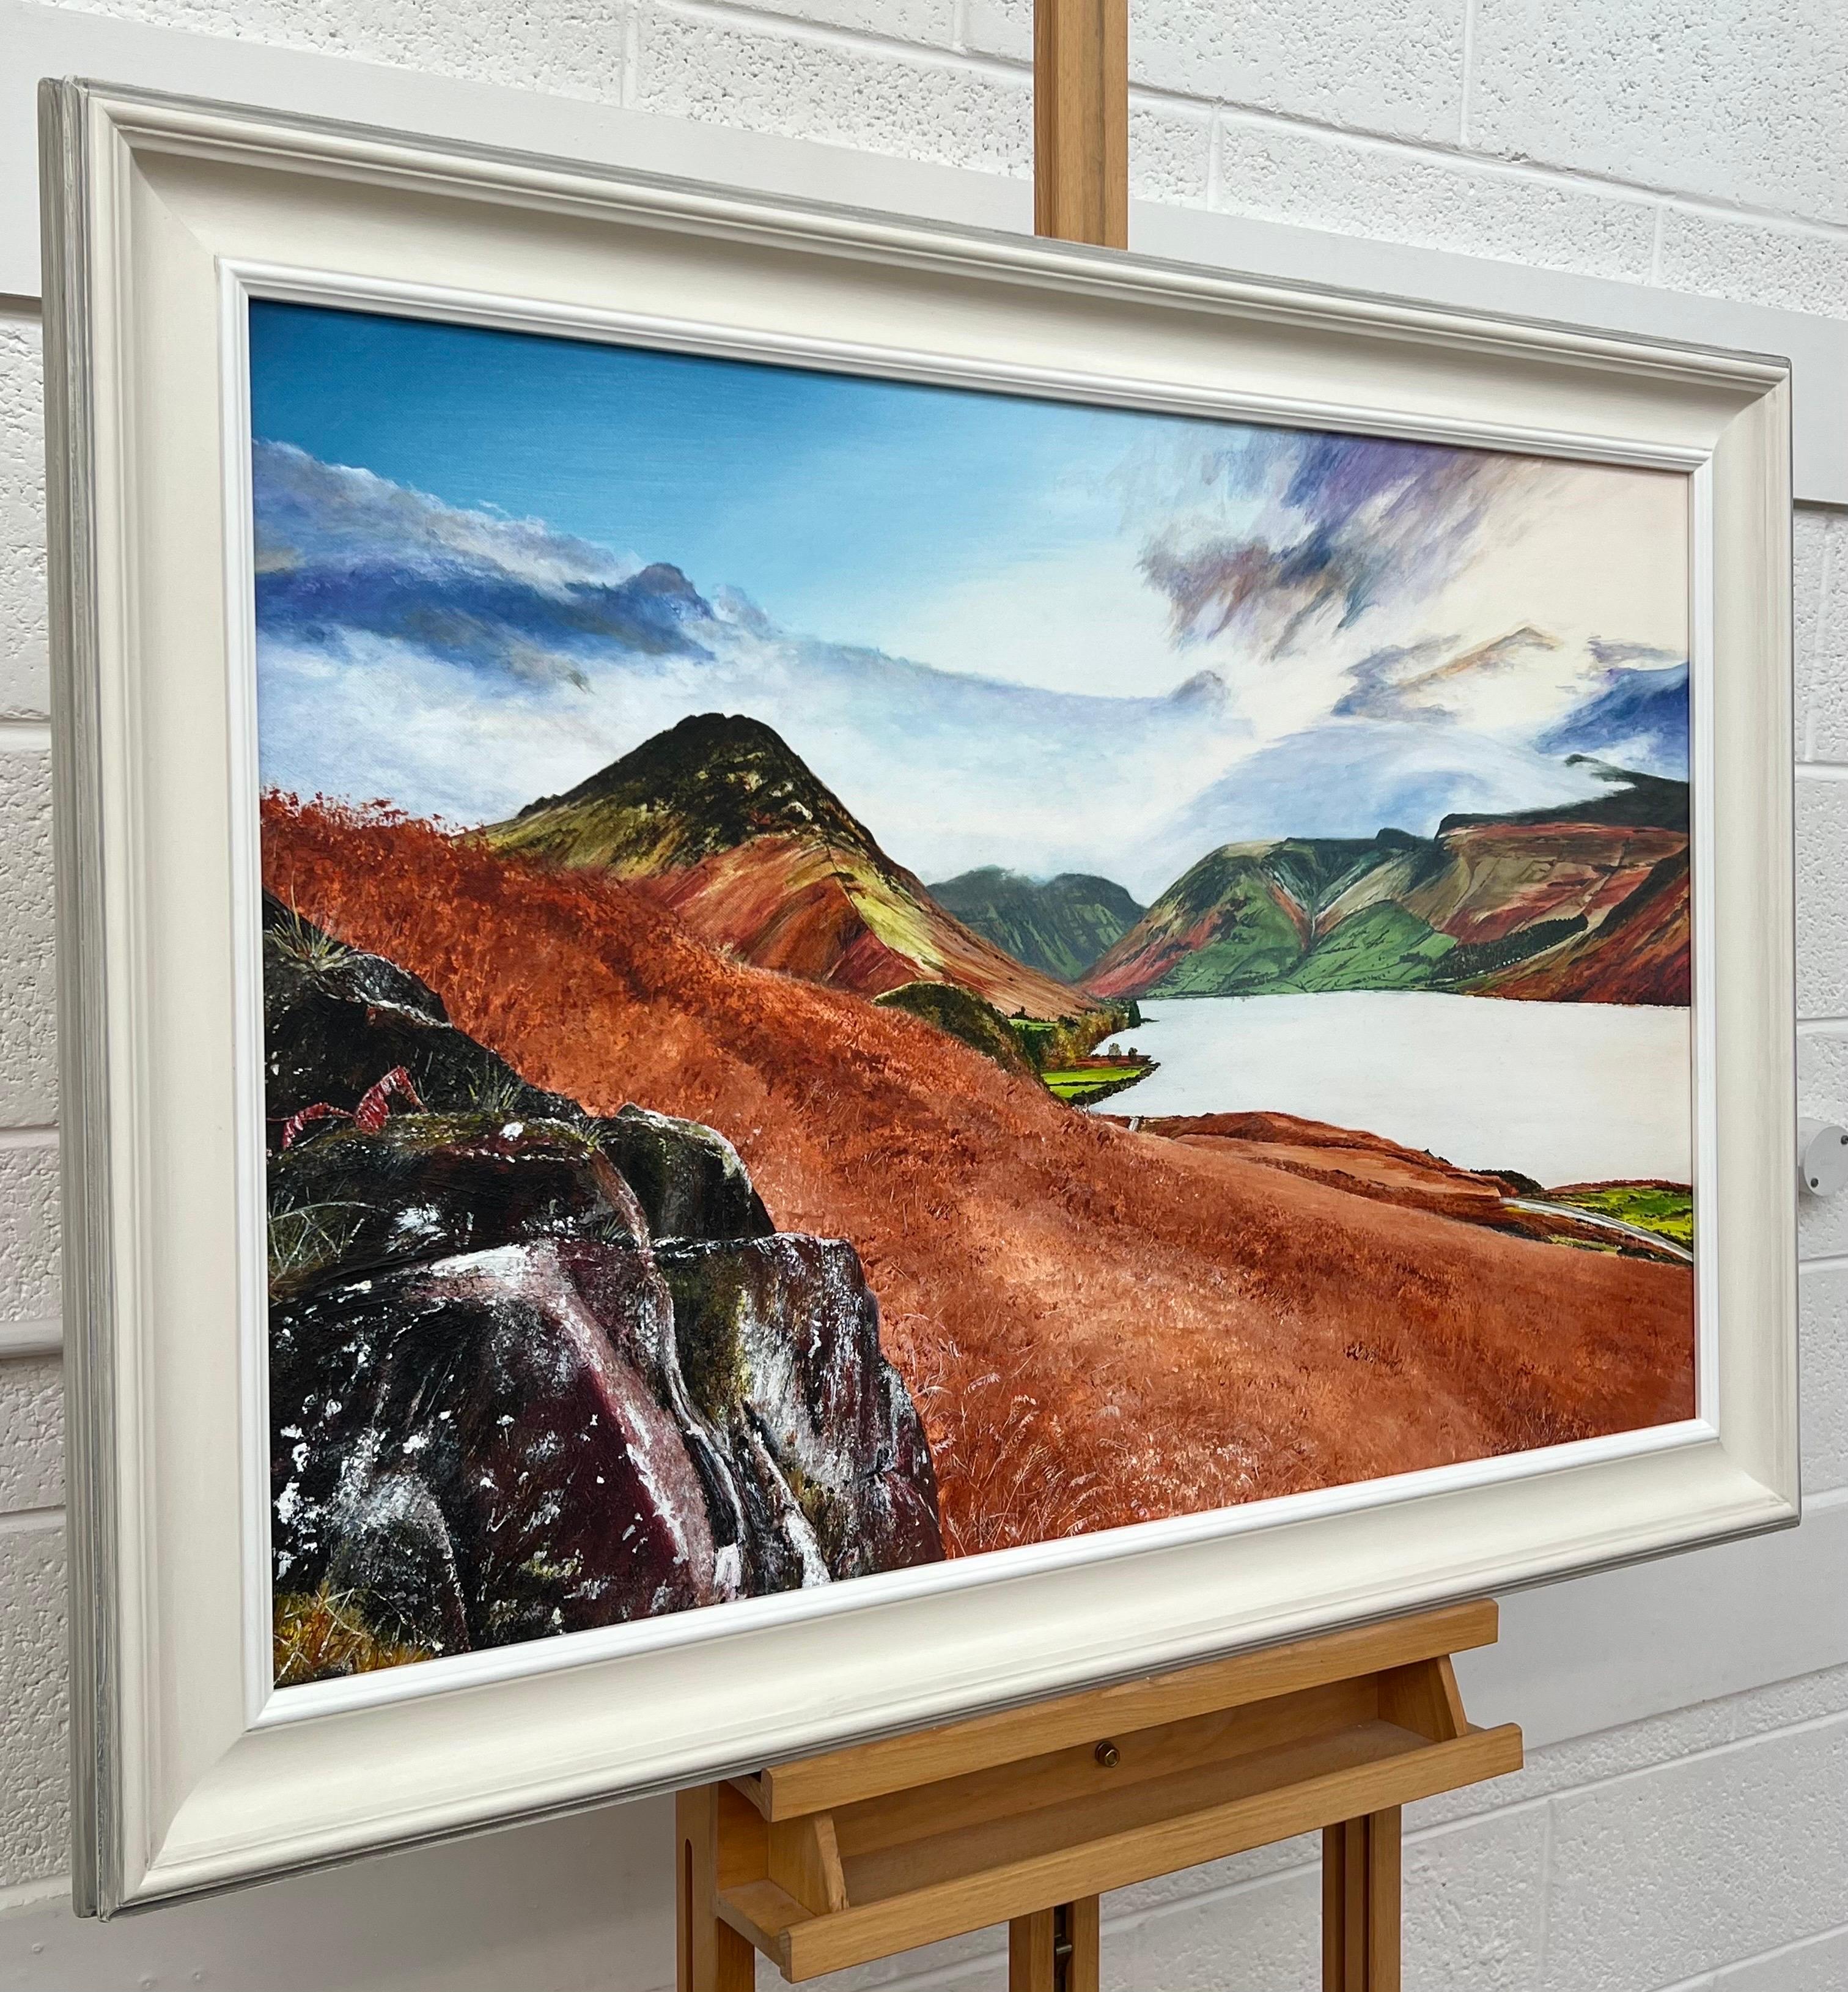 Landschaftsgemälde von Wastwater Lake District von einem zeitgenössischen britischen Künstler – Painting von Rebecca Ann Wilmer